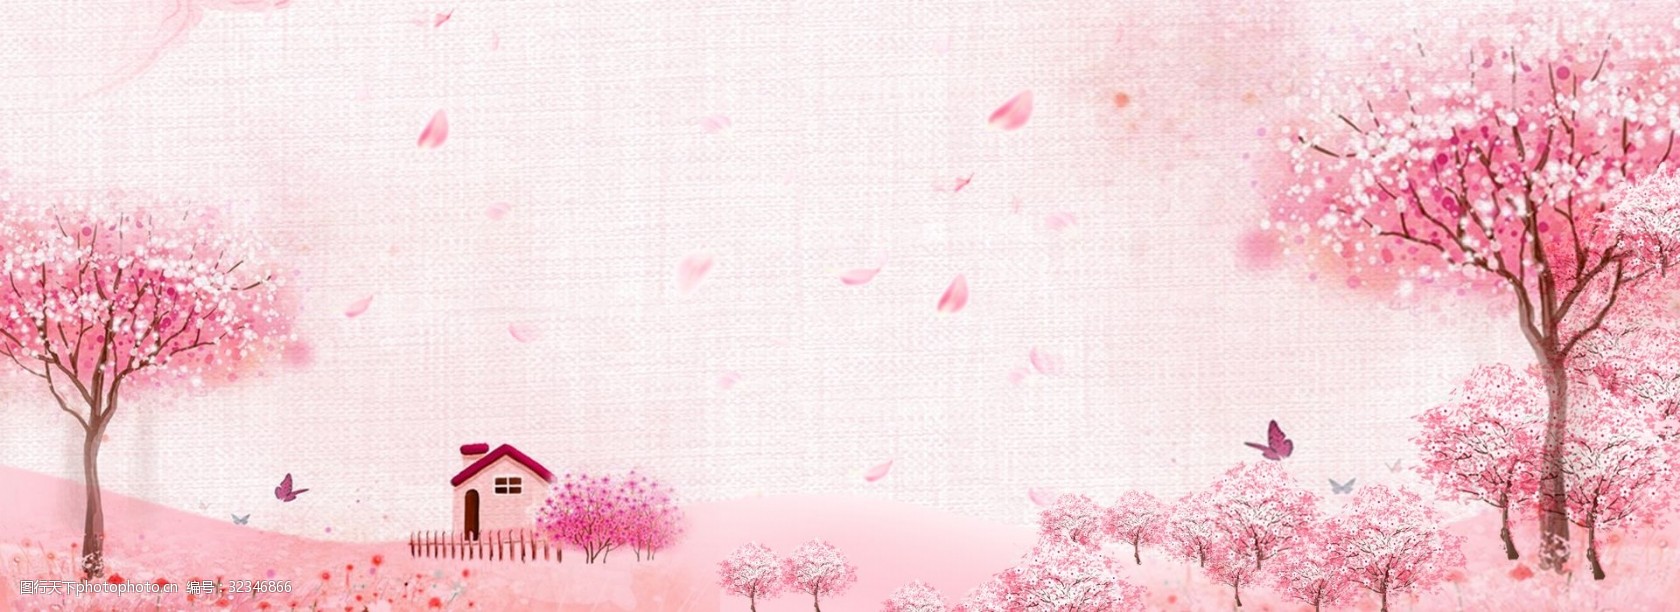 关键词:唯美浪漫樱花季背景 唯美 浪漫 樱花节 樱花林 粉色 清新 手绘